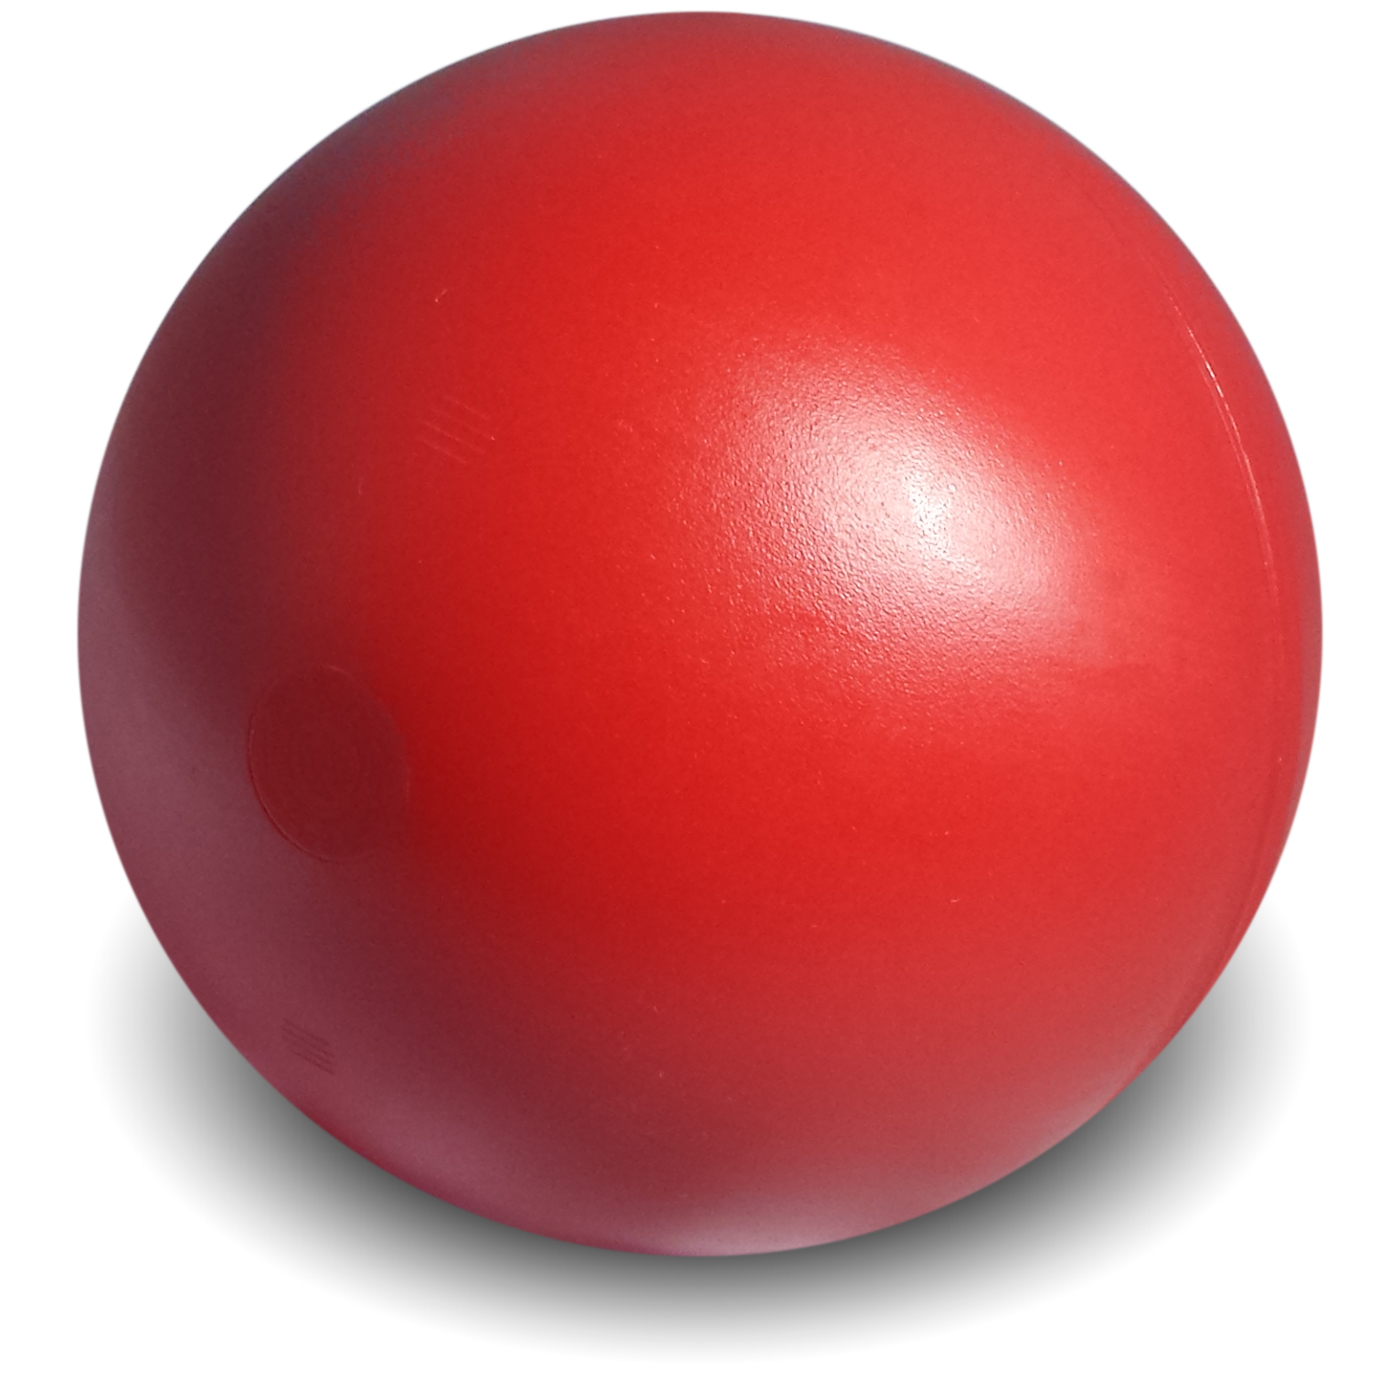 Download red balls. Красный мяч. Красный круглый шар. Красный мячик 4. Мячик и шар красные.